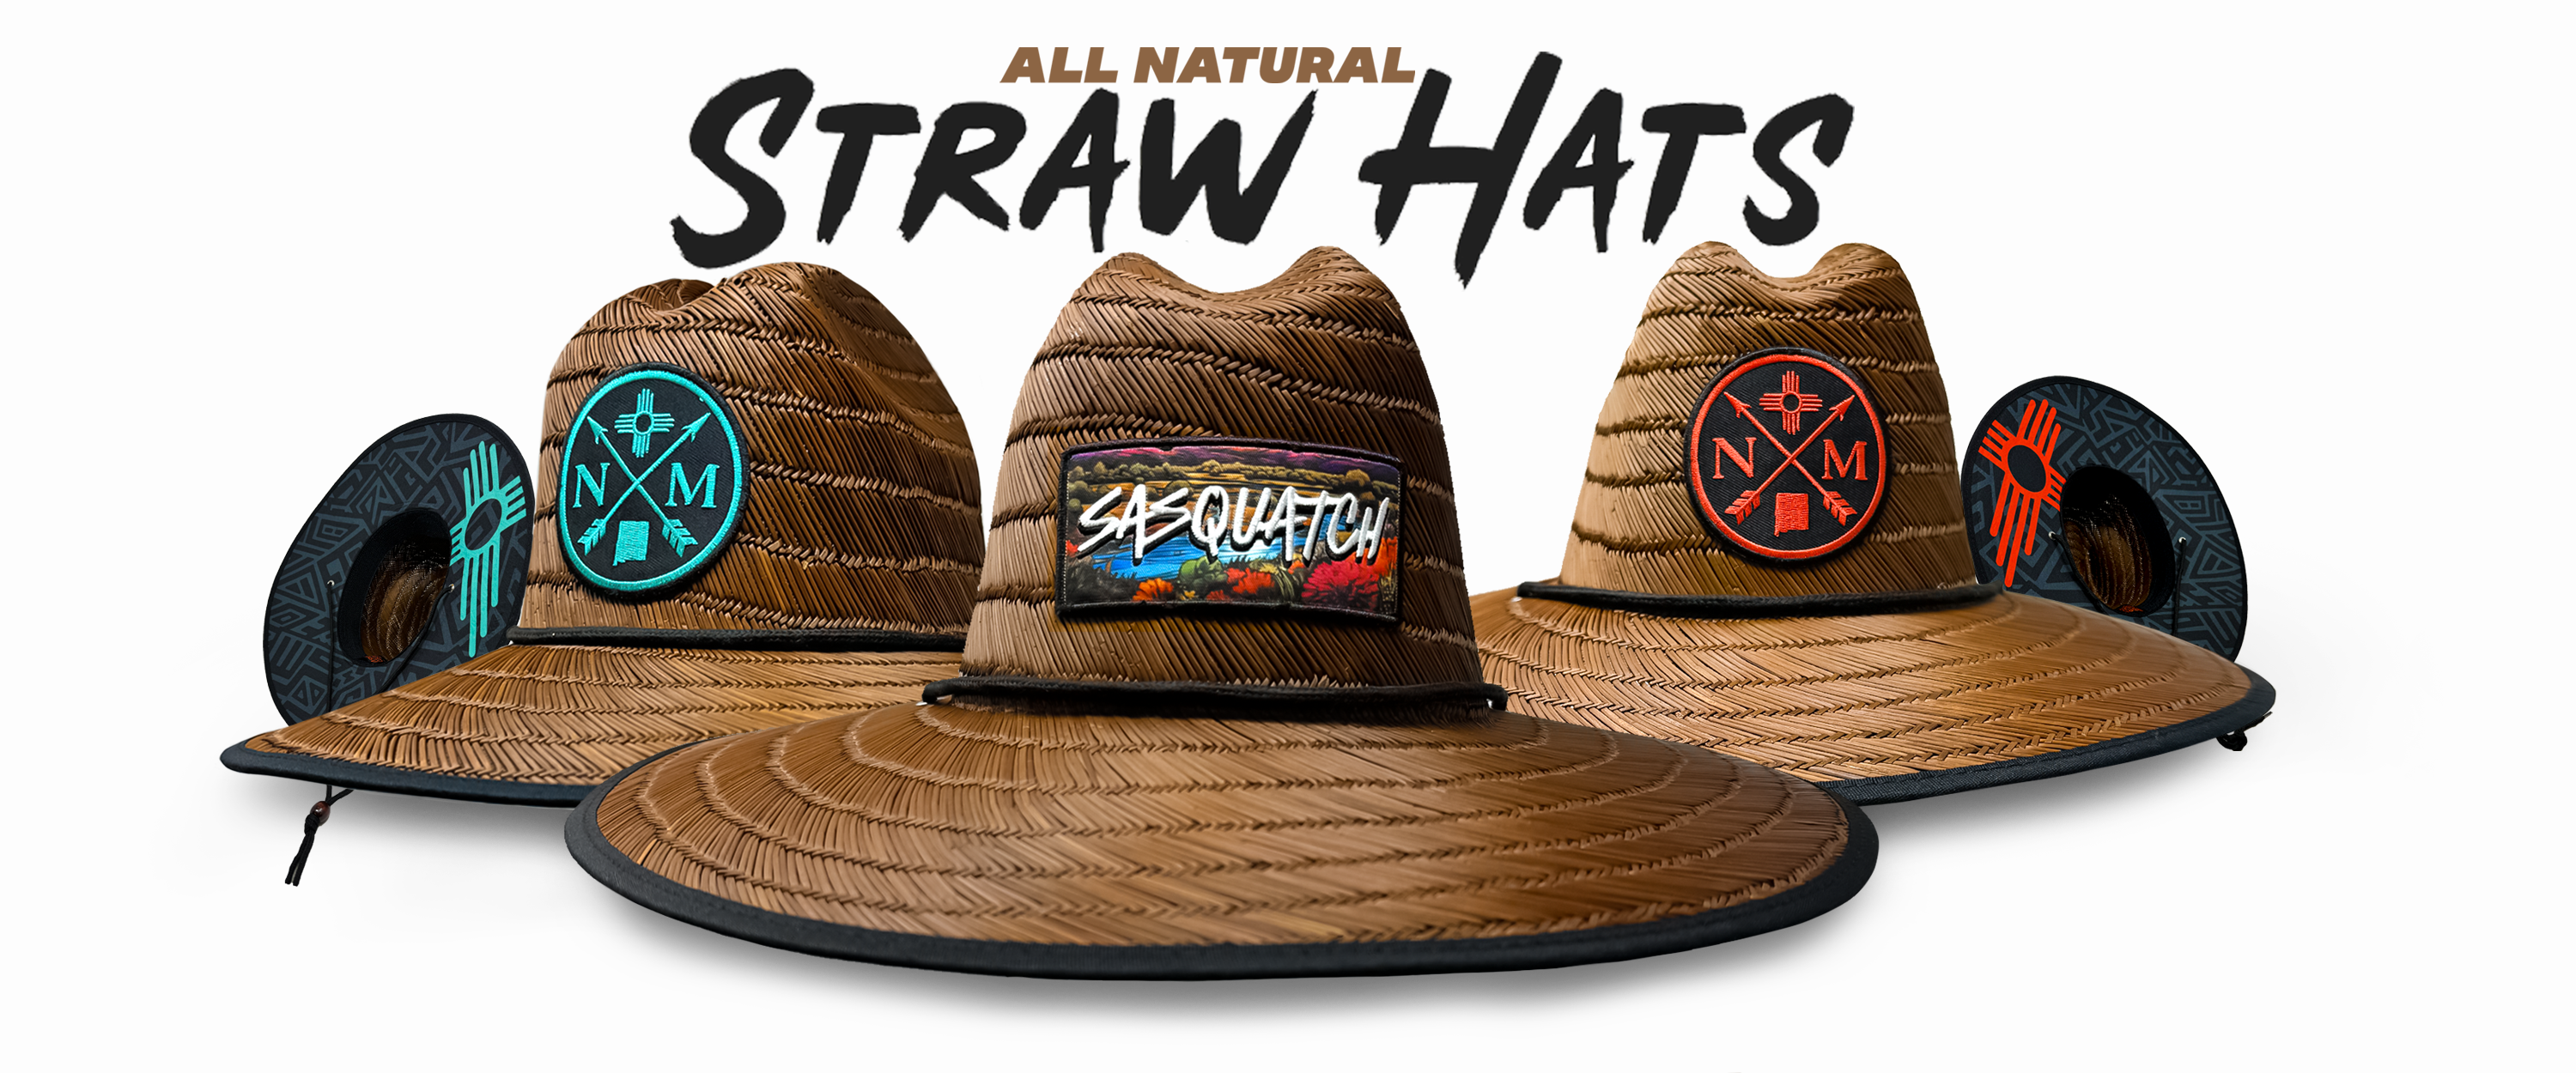 Natural Straw Hats